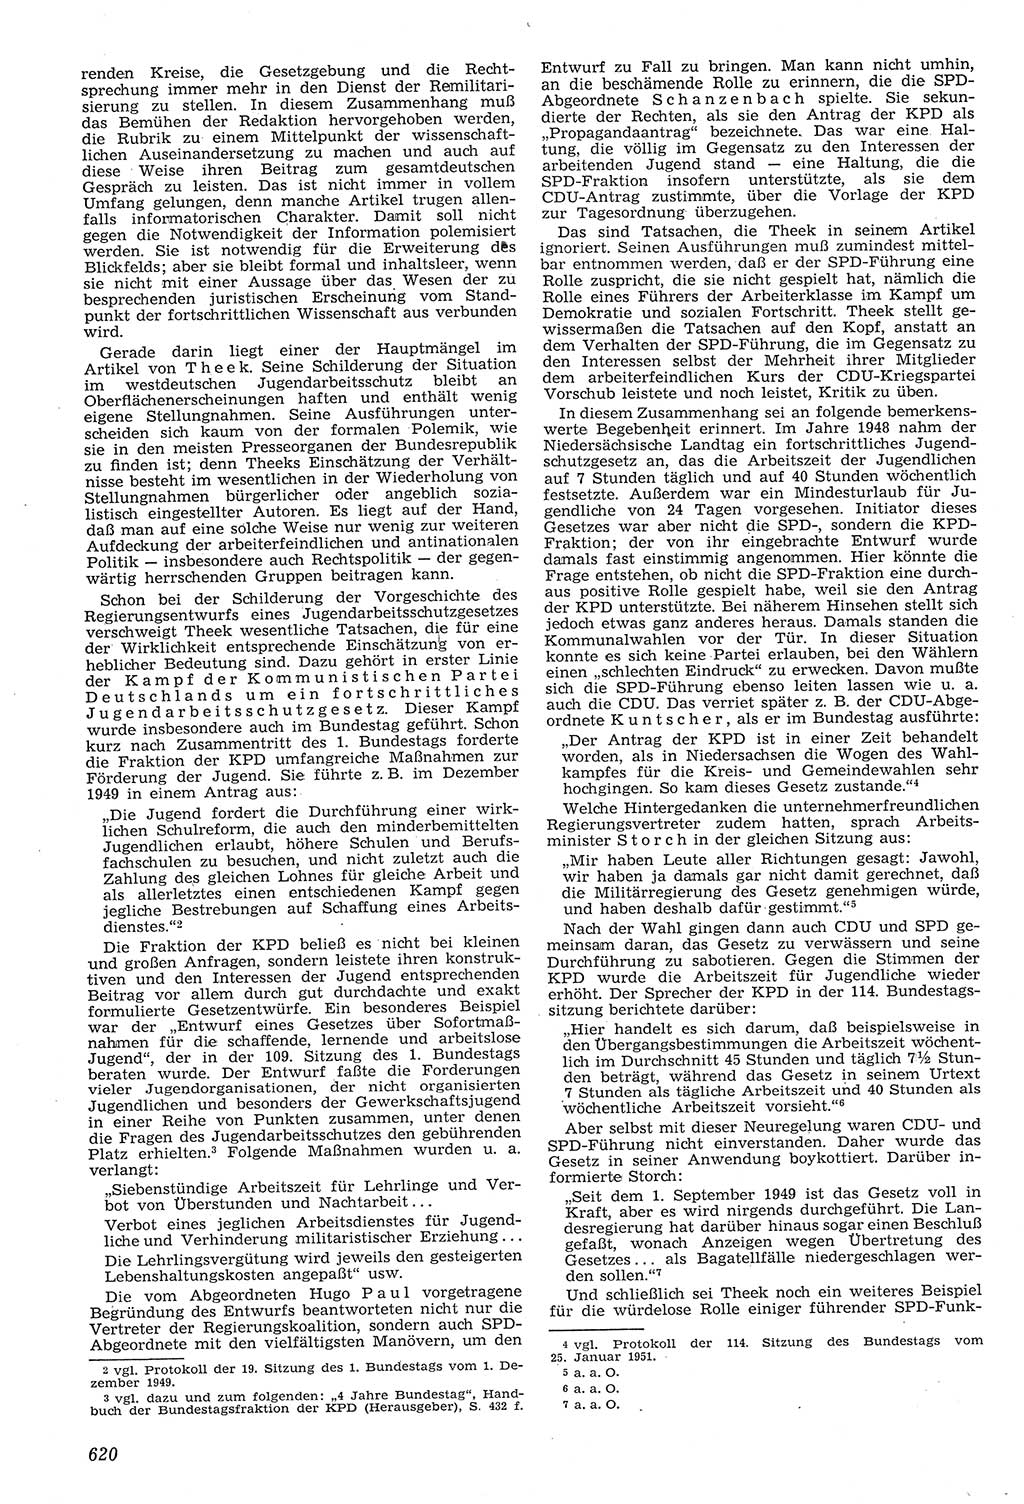 Neue Justiz (NJ), Zeitschrift für Recht und Rechtswissenschaft [Deutsche Demokratische Republik (DDR)], 11. Jahrgang 1957, Seite 620 (NJ DDR 1957, S. 620)